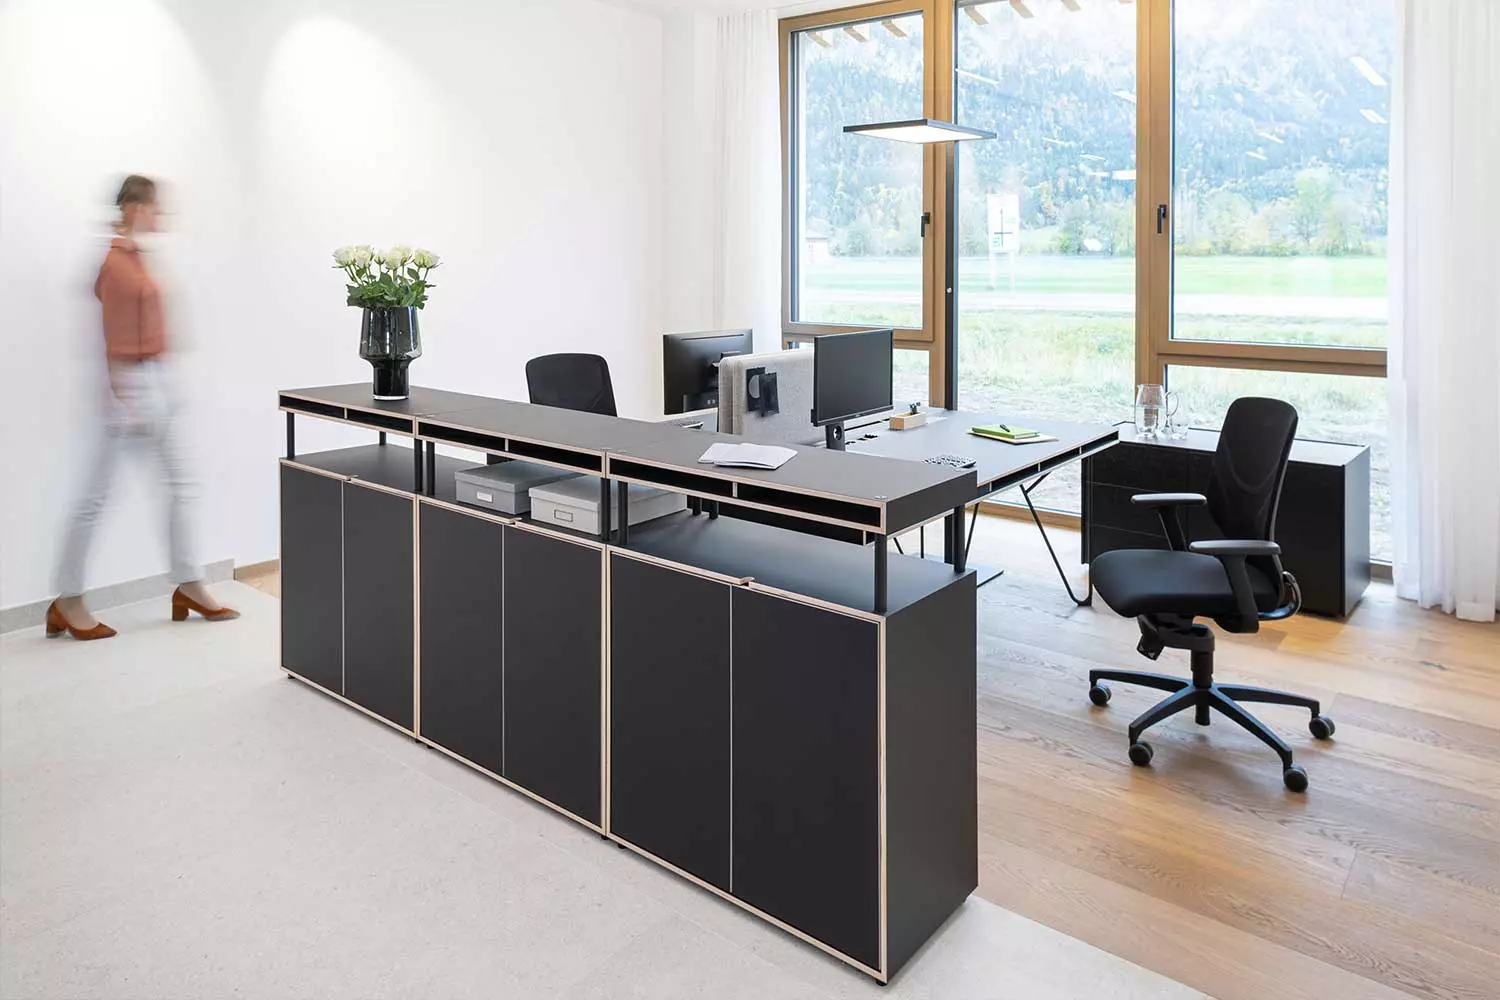 Офисный дизайн с мебелью Bene 3